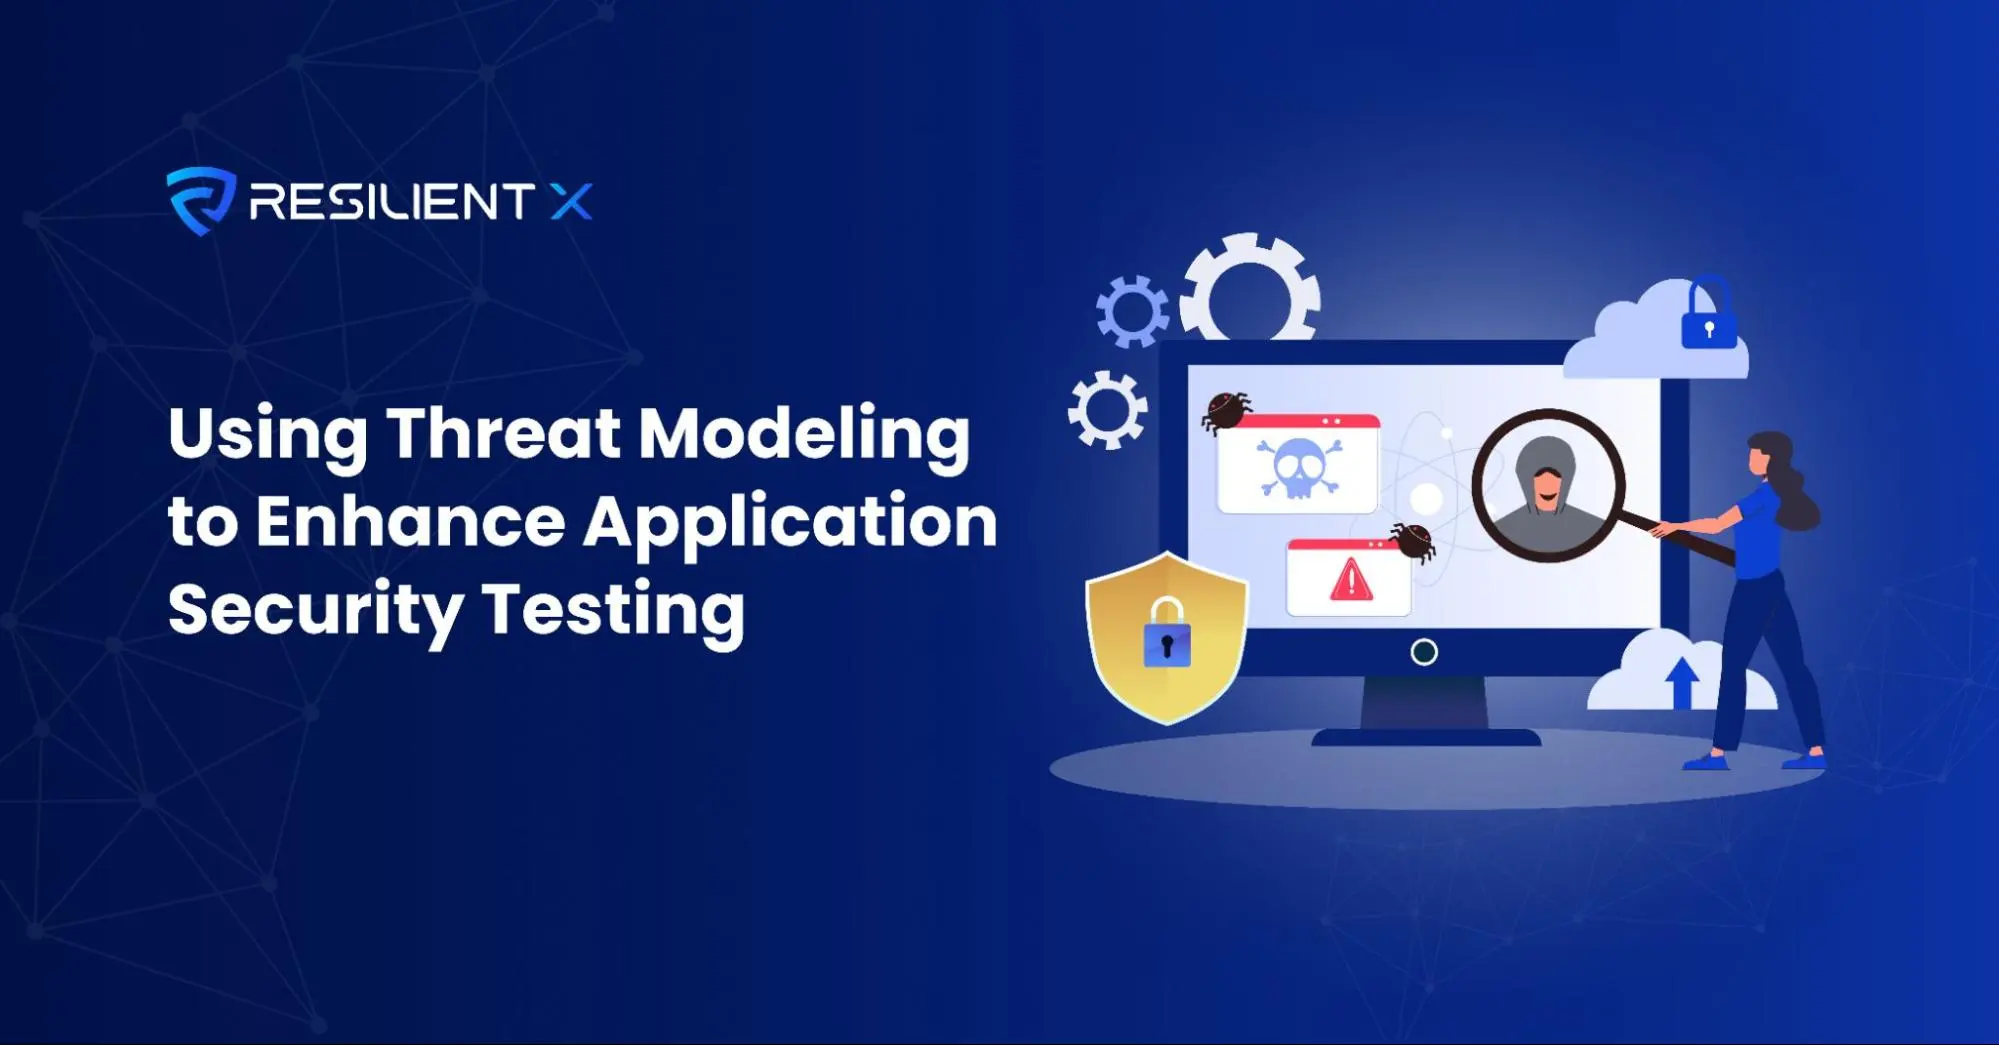 Utilizzo della modellazione delle minacce per migliorare i test di sicurezza delle applicazioni - immagine banner